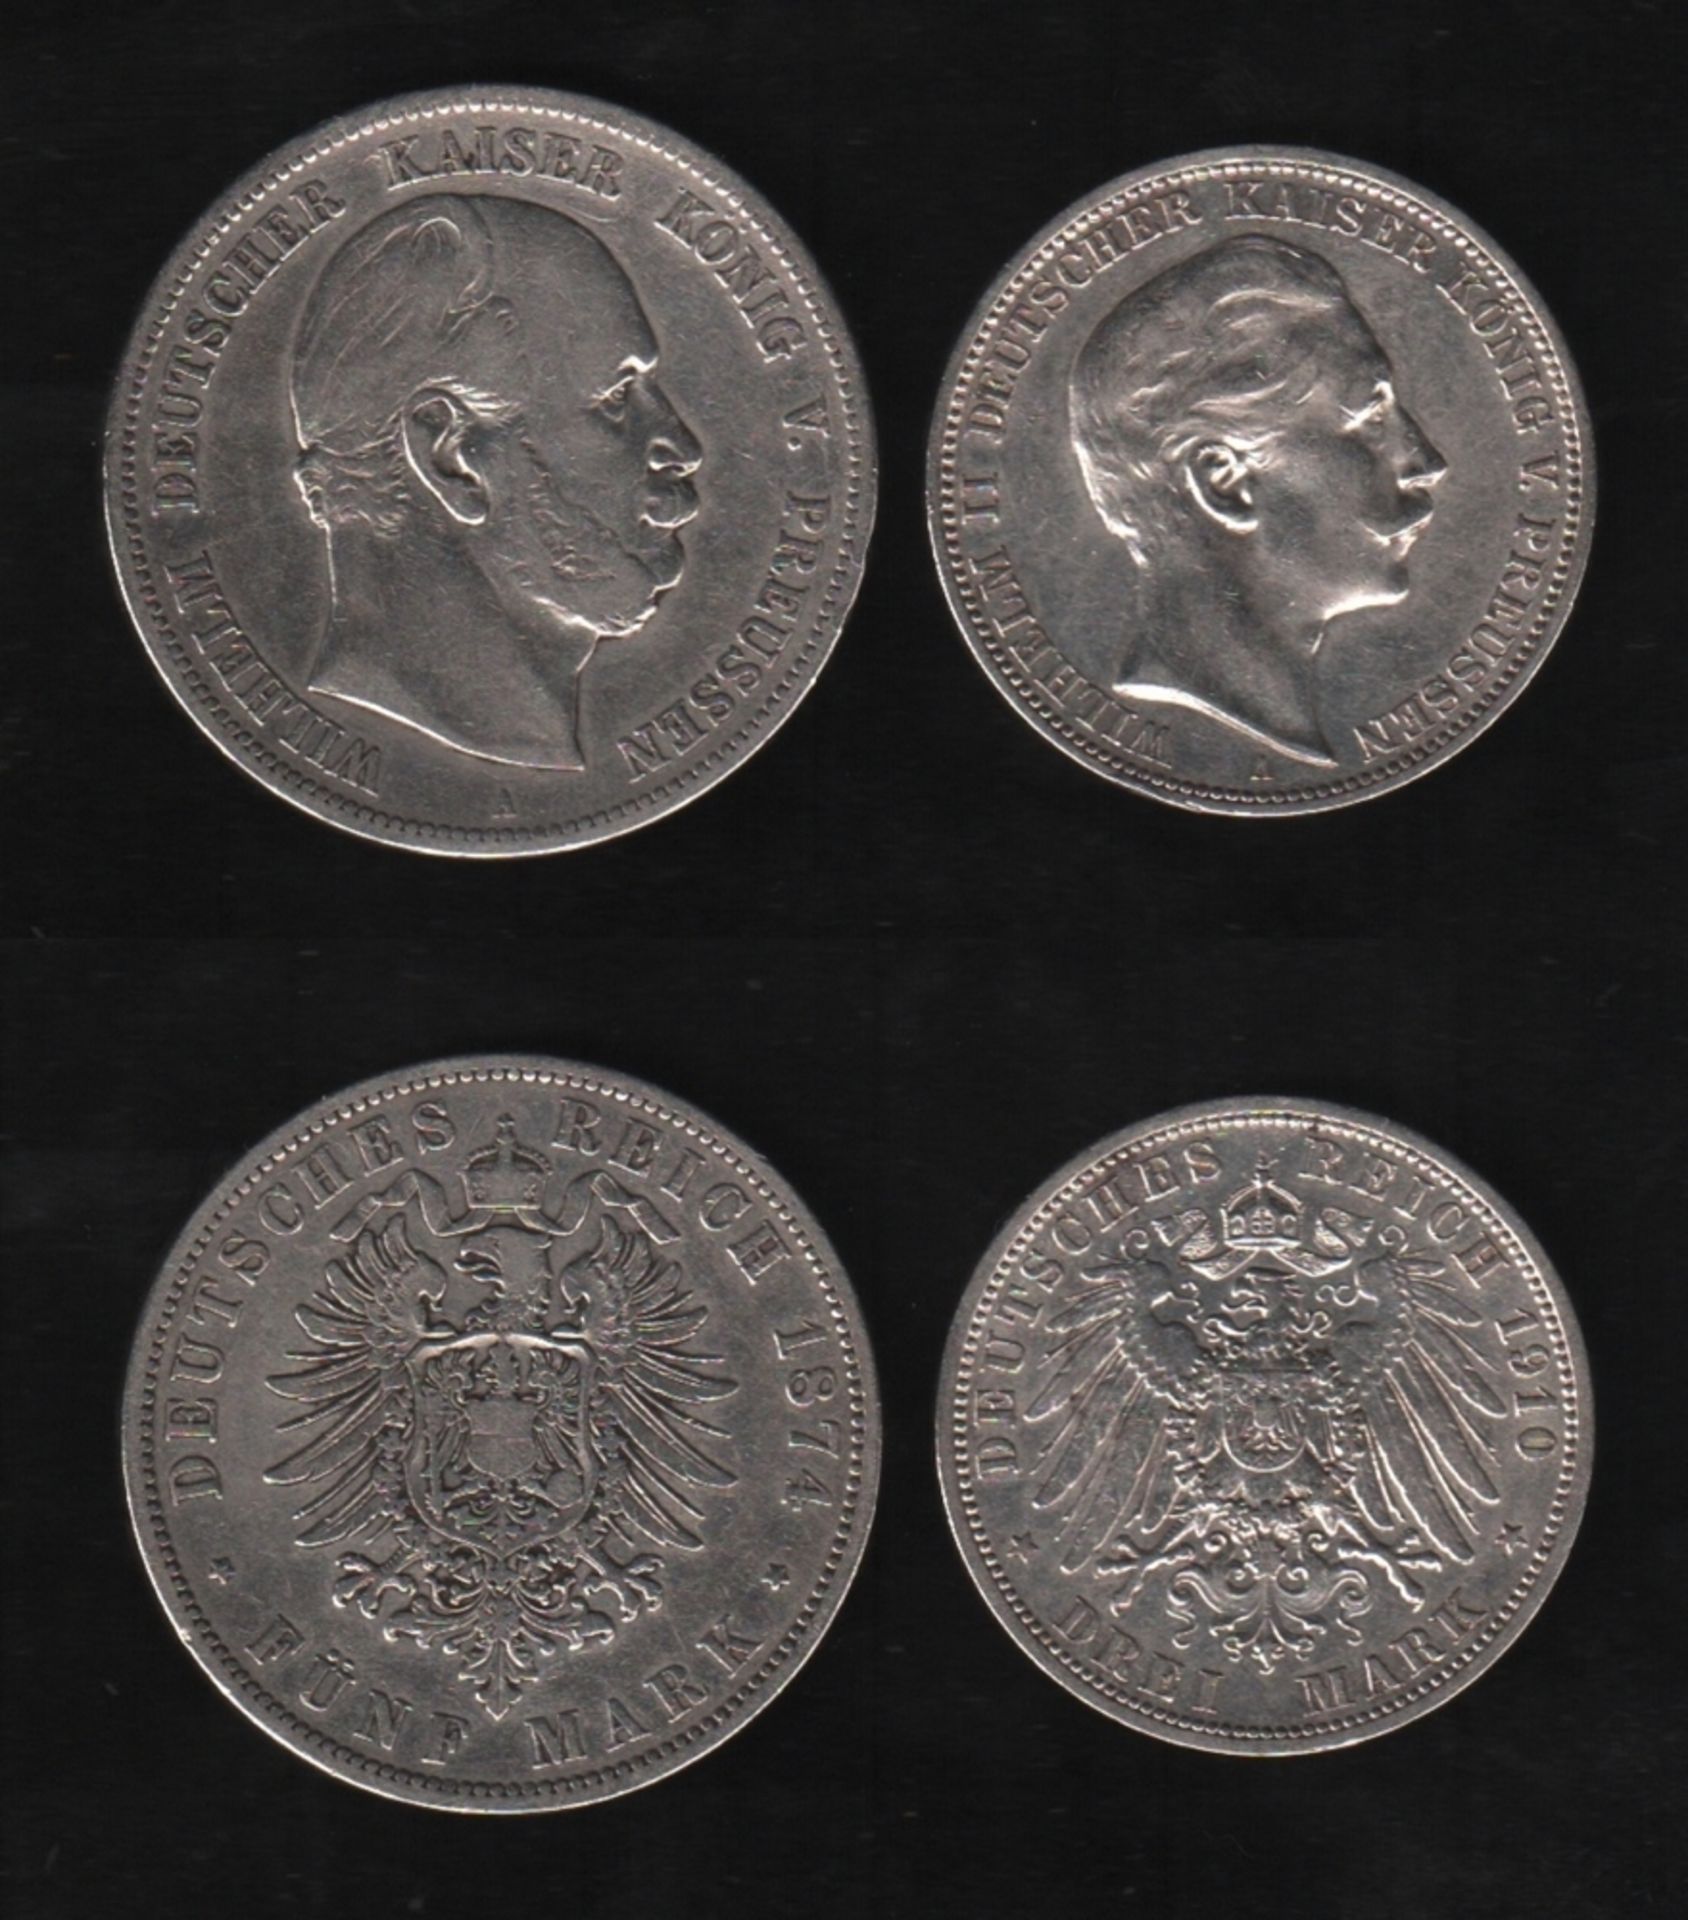 Deutsches Reich. Silbermünze. 5 Mark. Wilhelm I., Deutscher Kaiser. A 1874. Vorderseite: Porträt